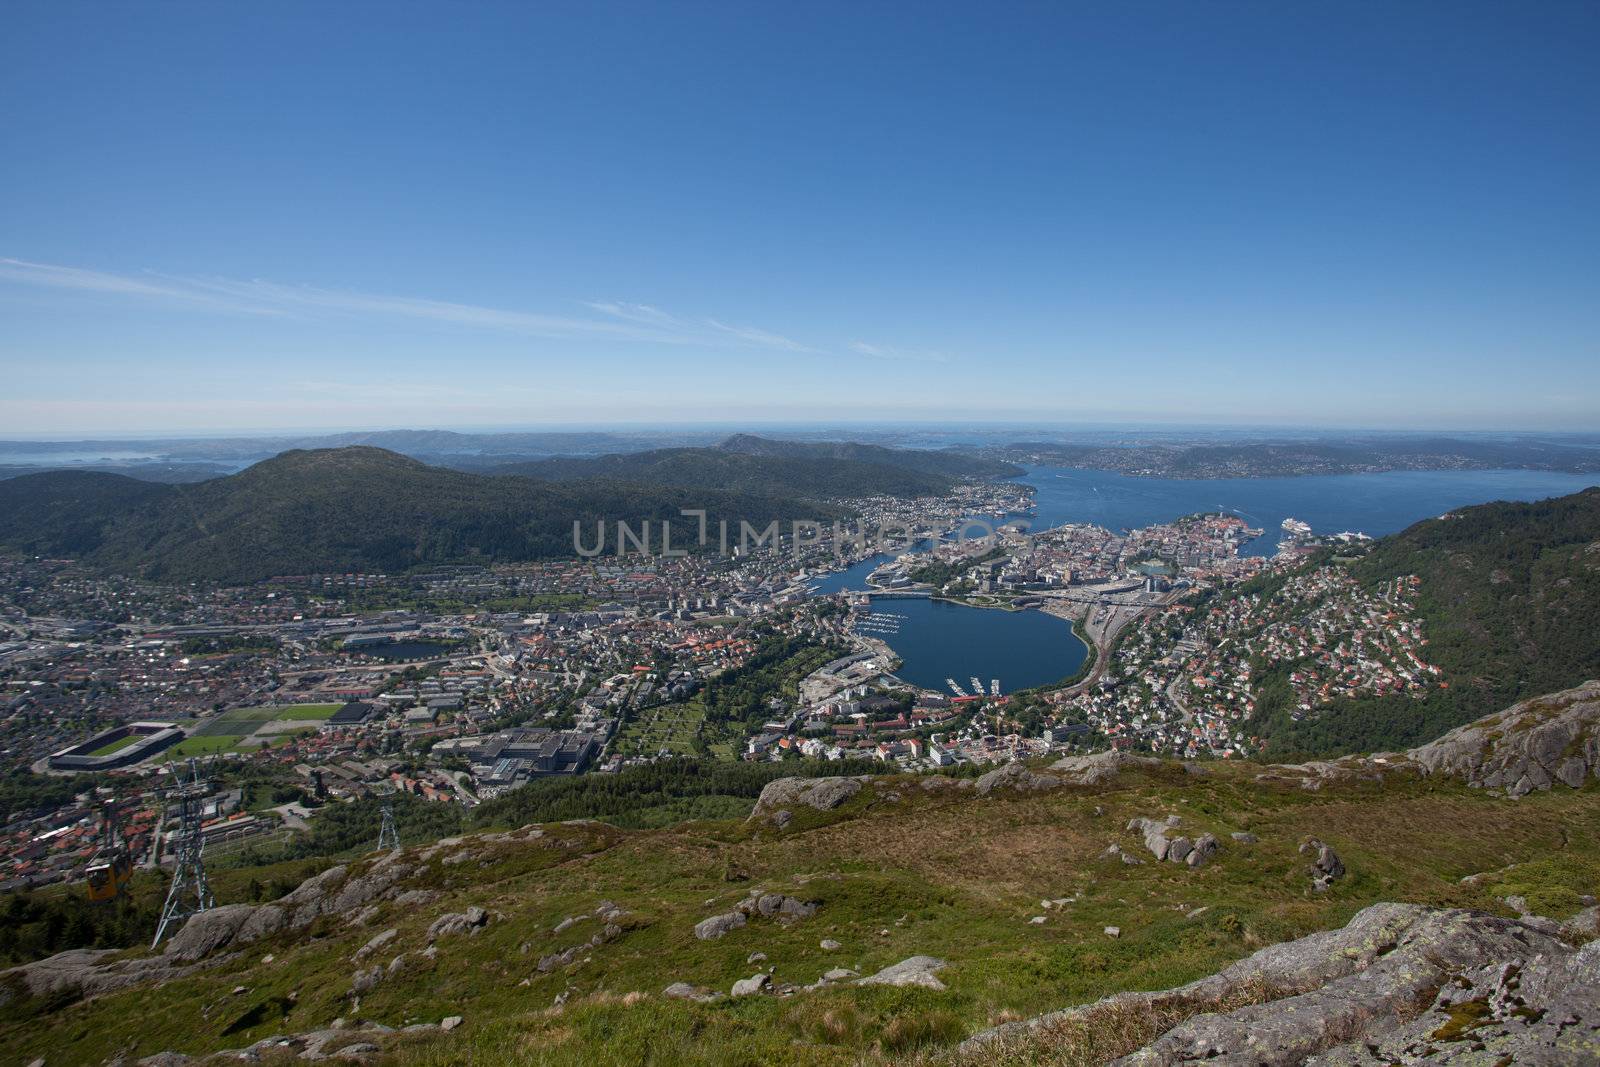 Taken from Ulriken in the city of Bergen, Norway